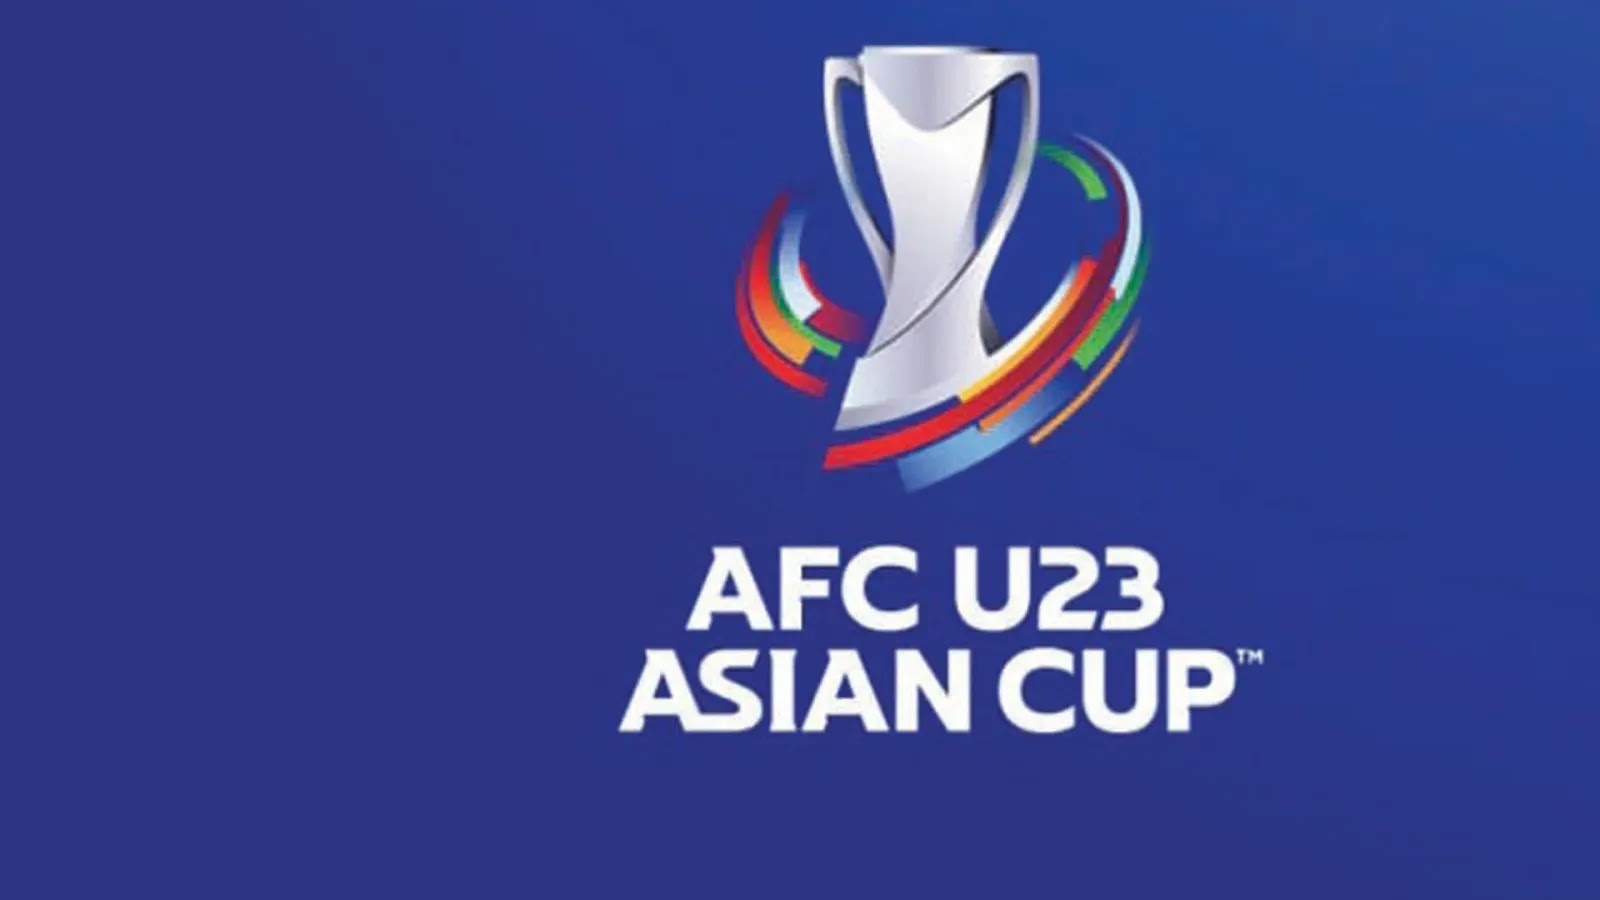    مشاهدة مباراة الامارات واليابان بث مباشر اليوم 03-06-2022 كأس اسيا الأولمبية موقع عالم الكورة لبث المباريات